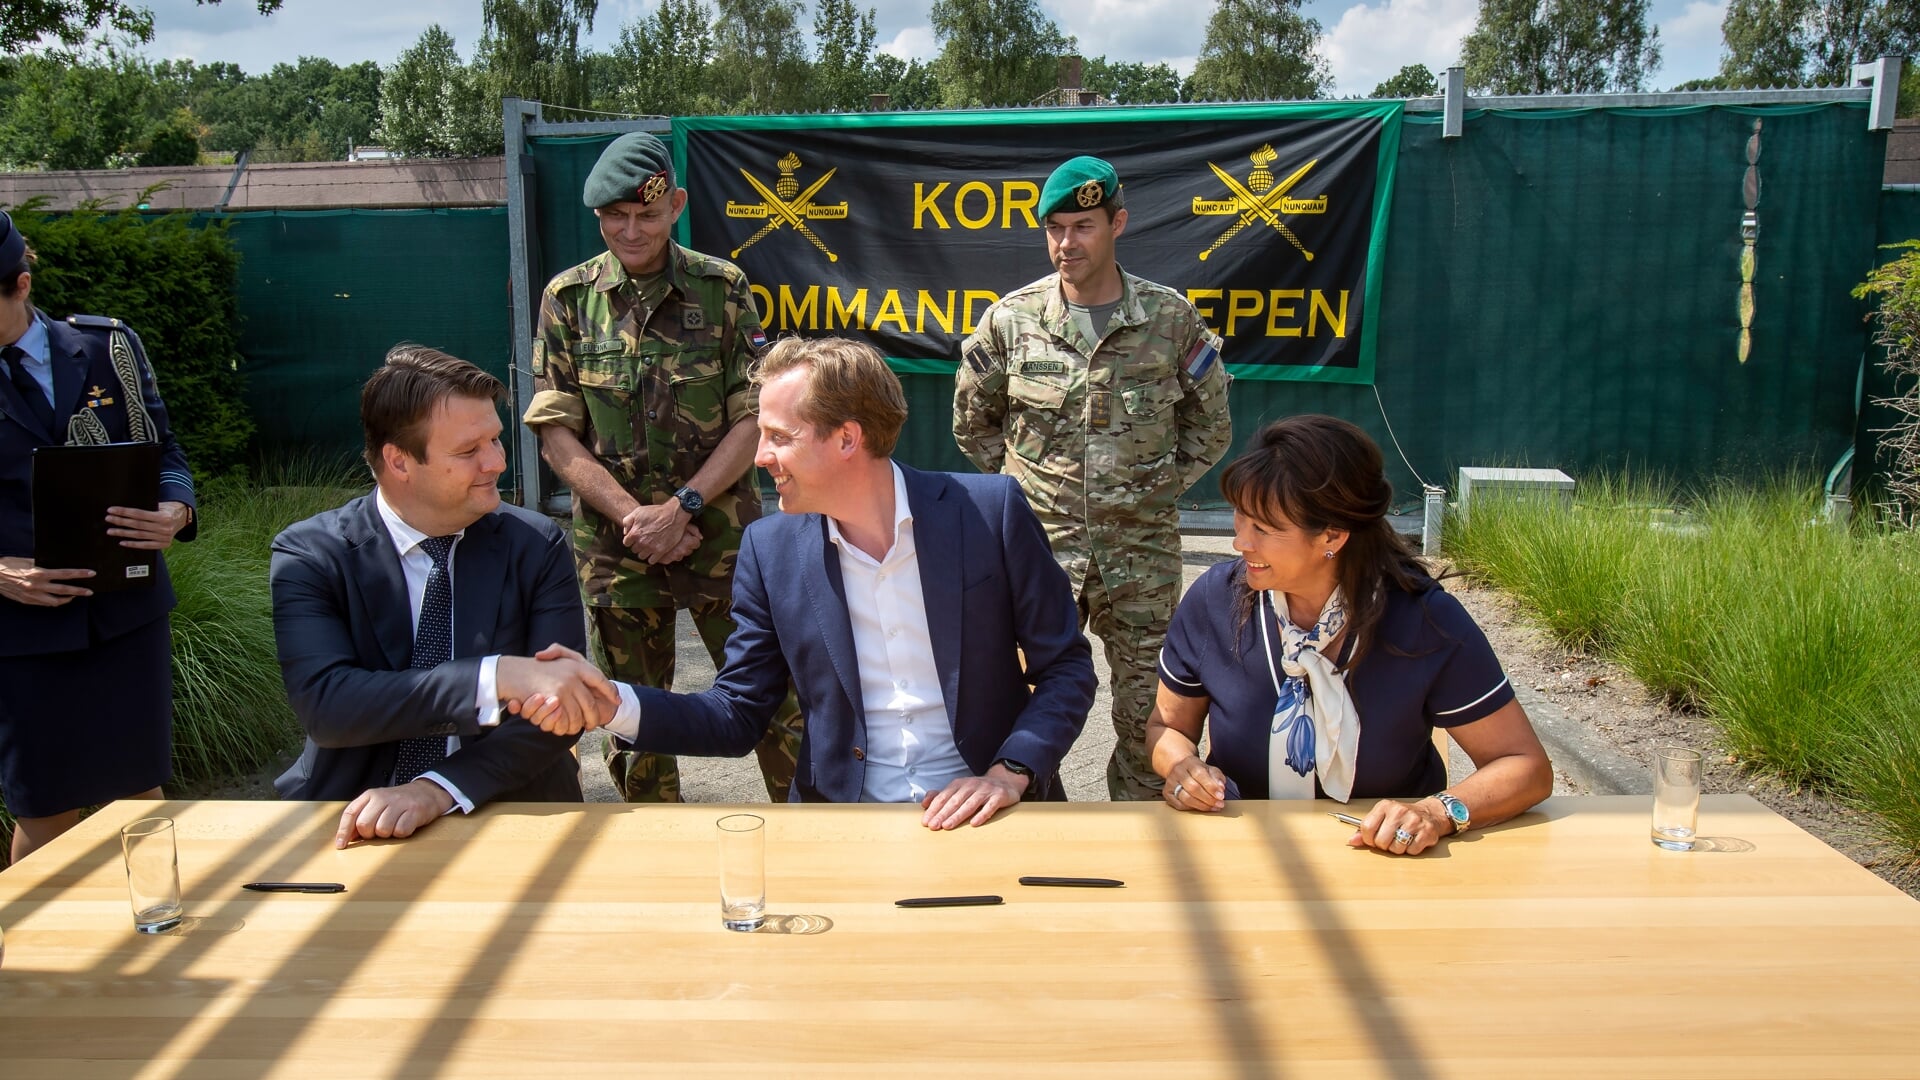 Roosendaal, 14 juli 2022.
De staatssecretaris van defensie tekent samen met de burgemeesters van Rucphen en Roosendaal het bestuurlijk voornemen om in de regio op zoek te gaan naar een geschikte locatie voor de nieuwe kazerne van het korps commandotroepen.